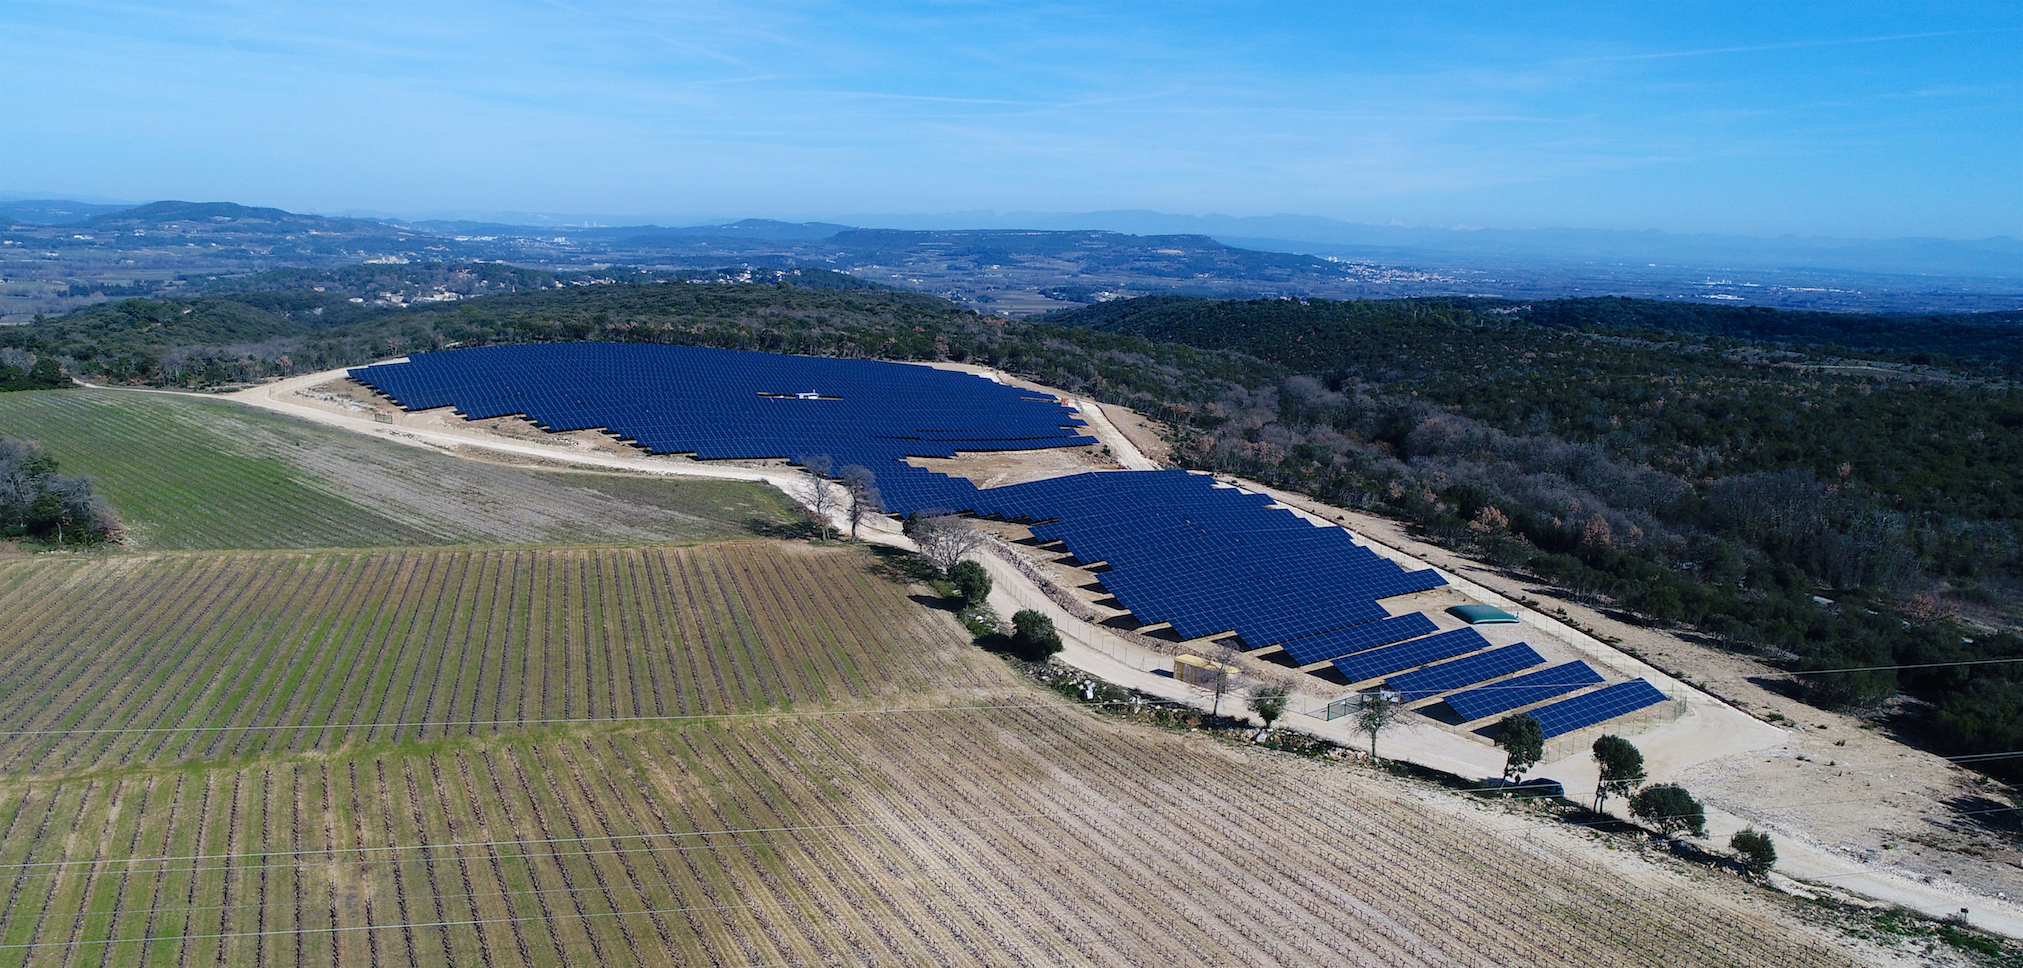 Autoroute A69 Toulouse - Castres : des centrales photovoltaïques bientôt le long du tracé ?